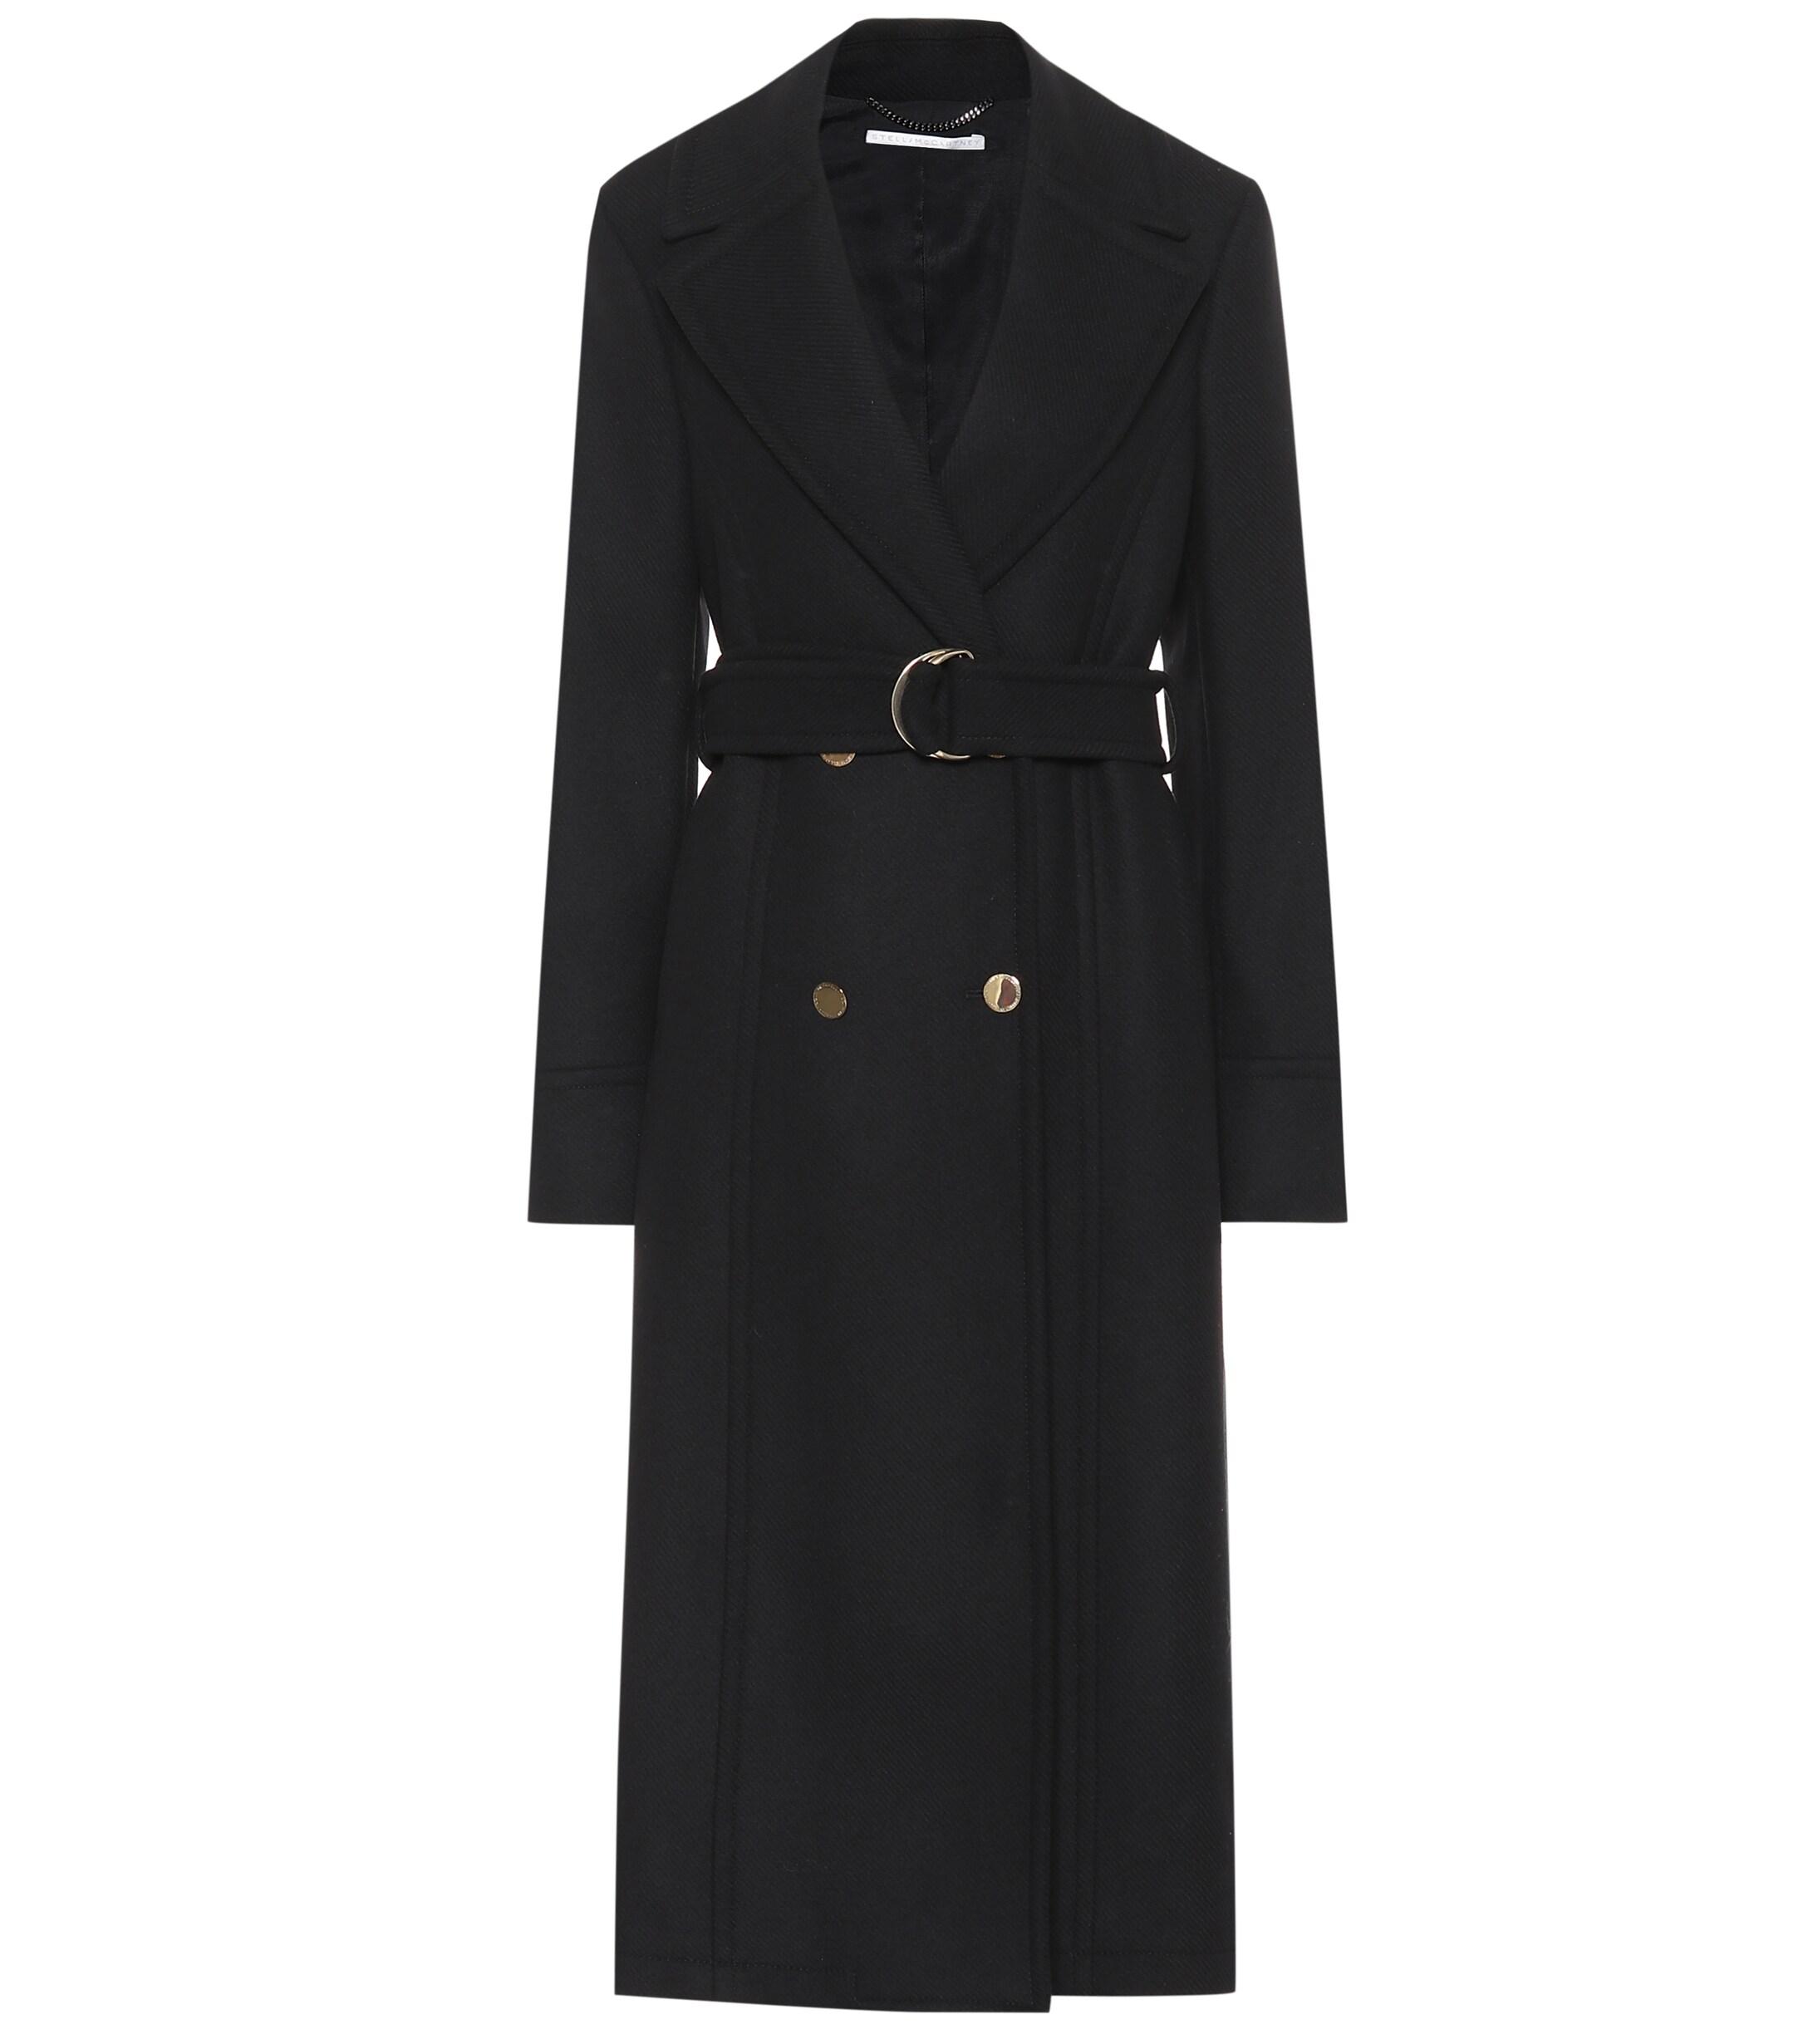 Stella McCartney Belted Wool Coat in Black - Lyst